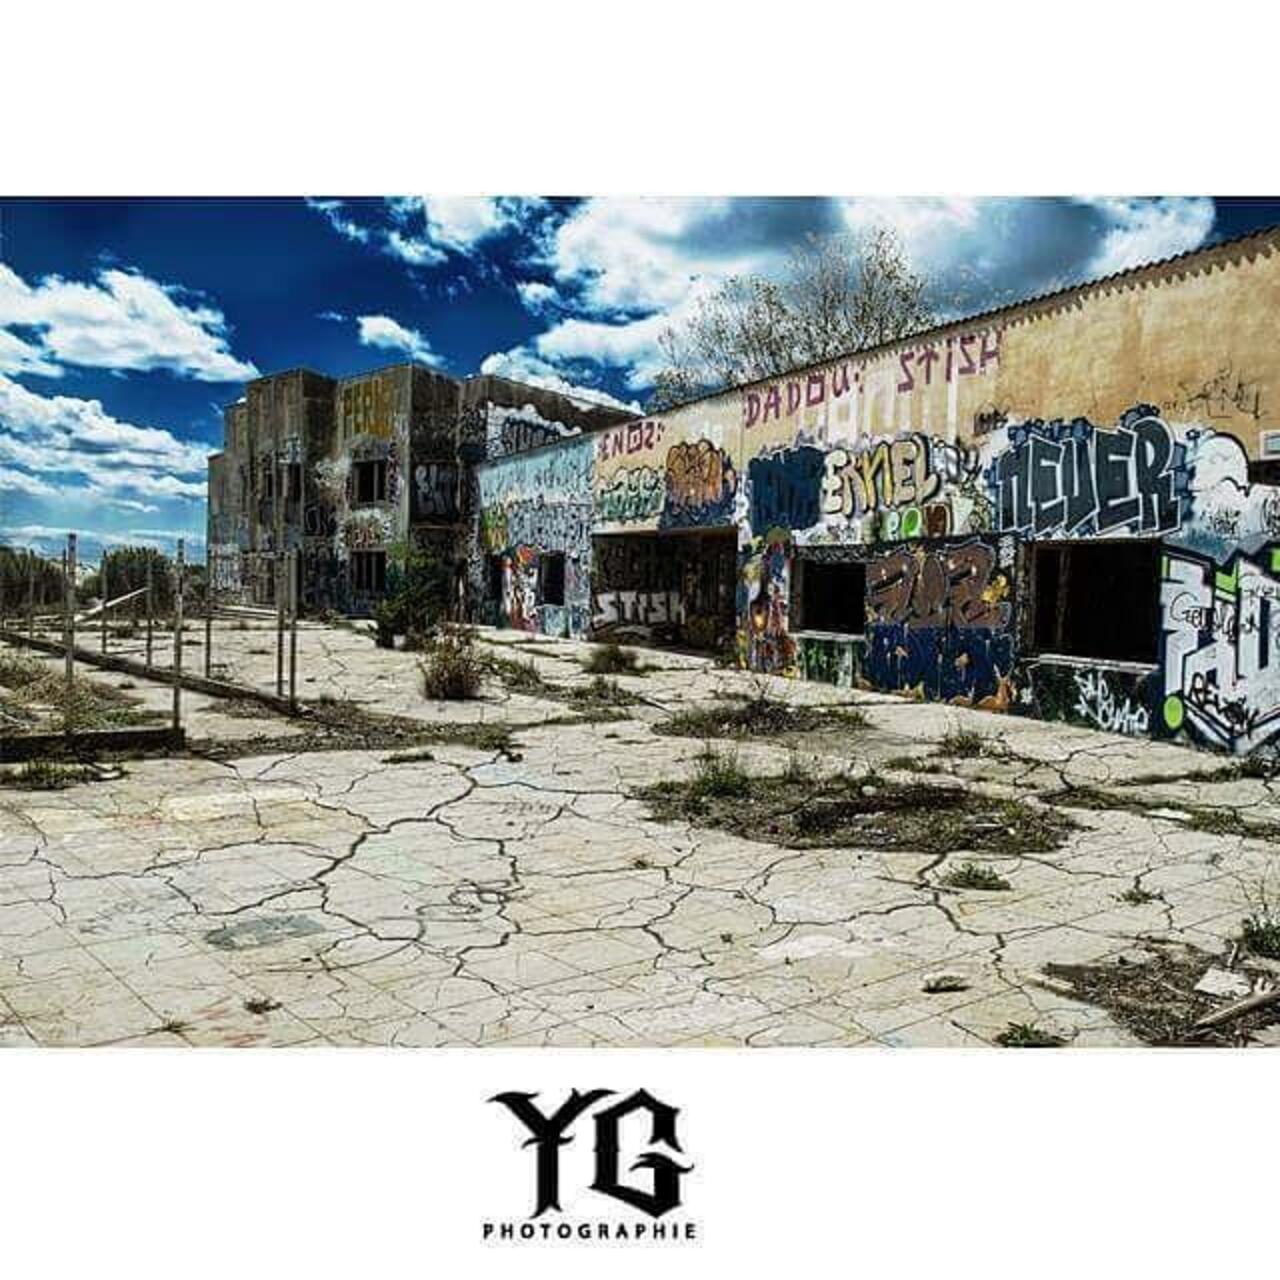 Instagram : @yg34 / @yg3487 
#graffiti #graff #graffitiart #street #streetart #lieuxabandonnés http://t.co/5e2IQhnCx0